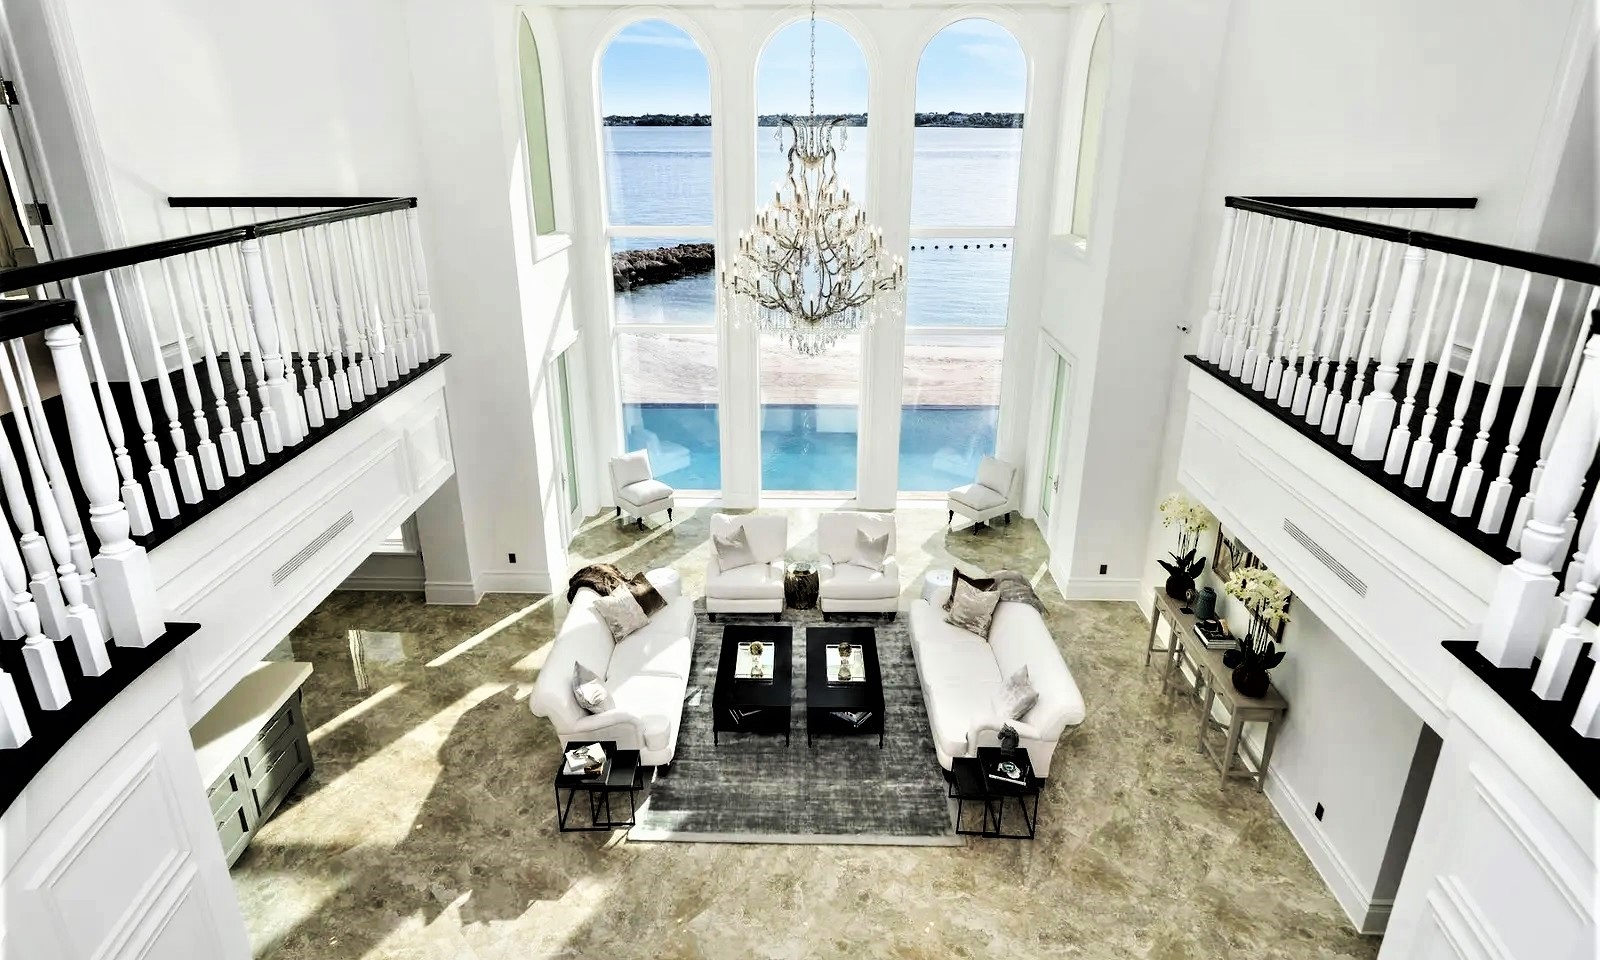 【#Architecture】巴哈馬天堂島上的殖民地豪宅 Elisium以頂級規格映襯白沙